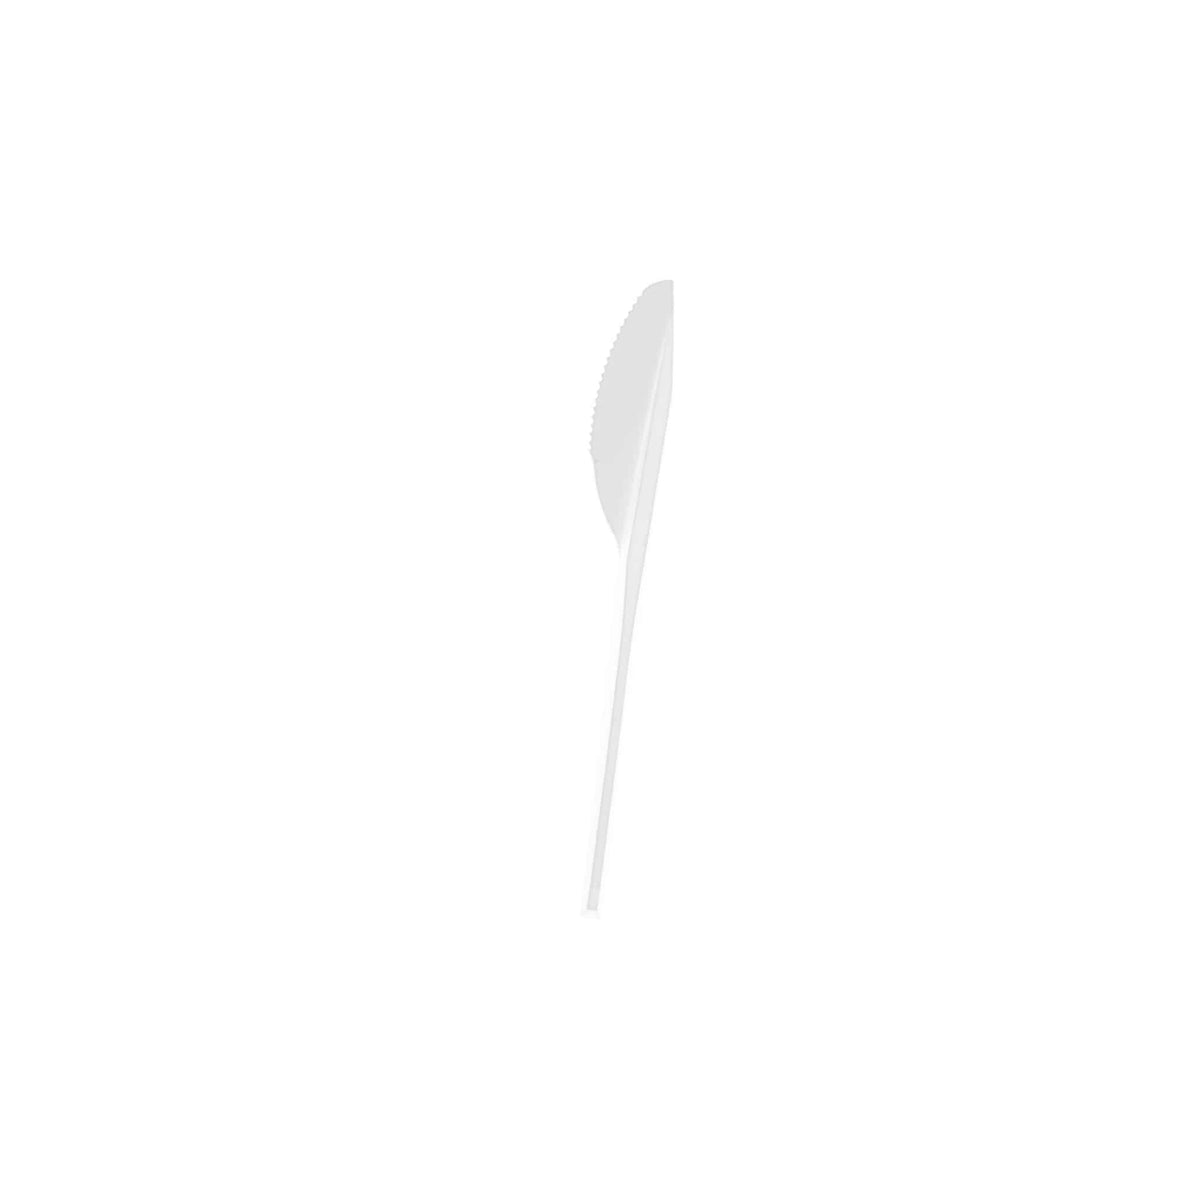  Plastic White Normal Knife